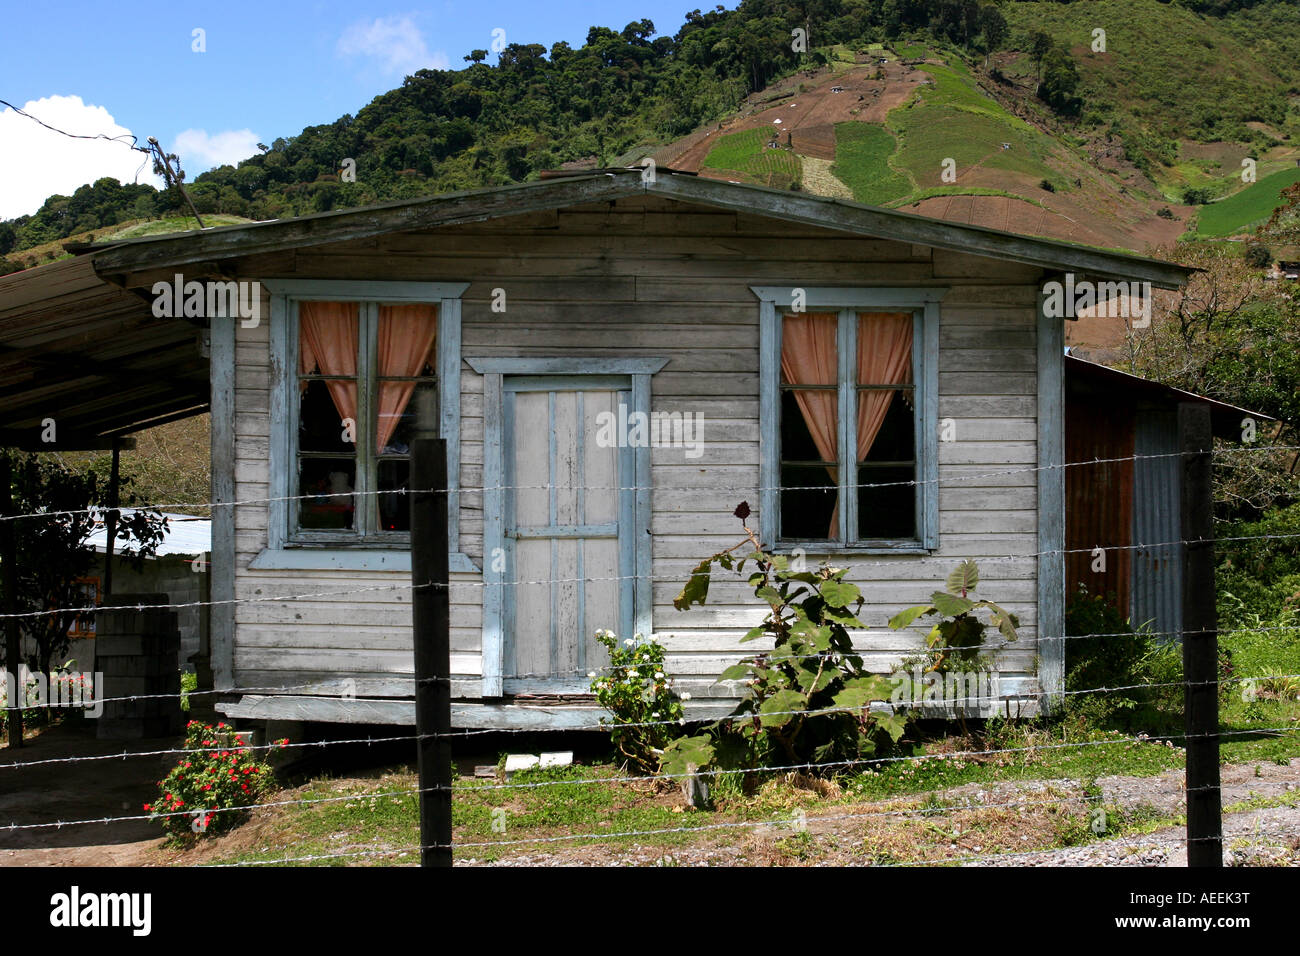 Les travailleurs pauvres (une maison) trouvés dans les montagnes où l'agriculture est le seul moyen de vie, Cerro Punta, Chiriqui, au Panama. Banque D'Images